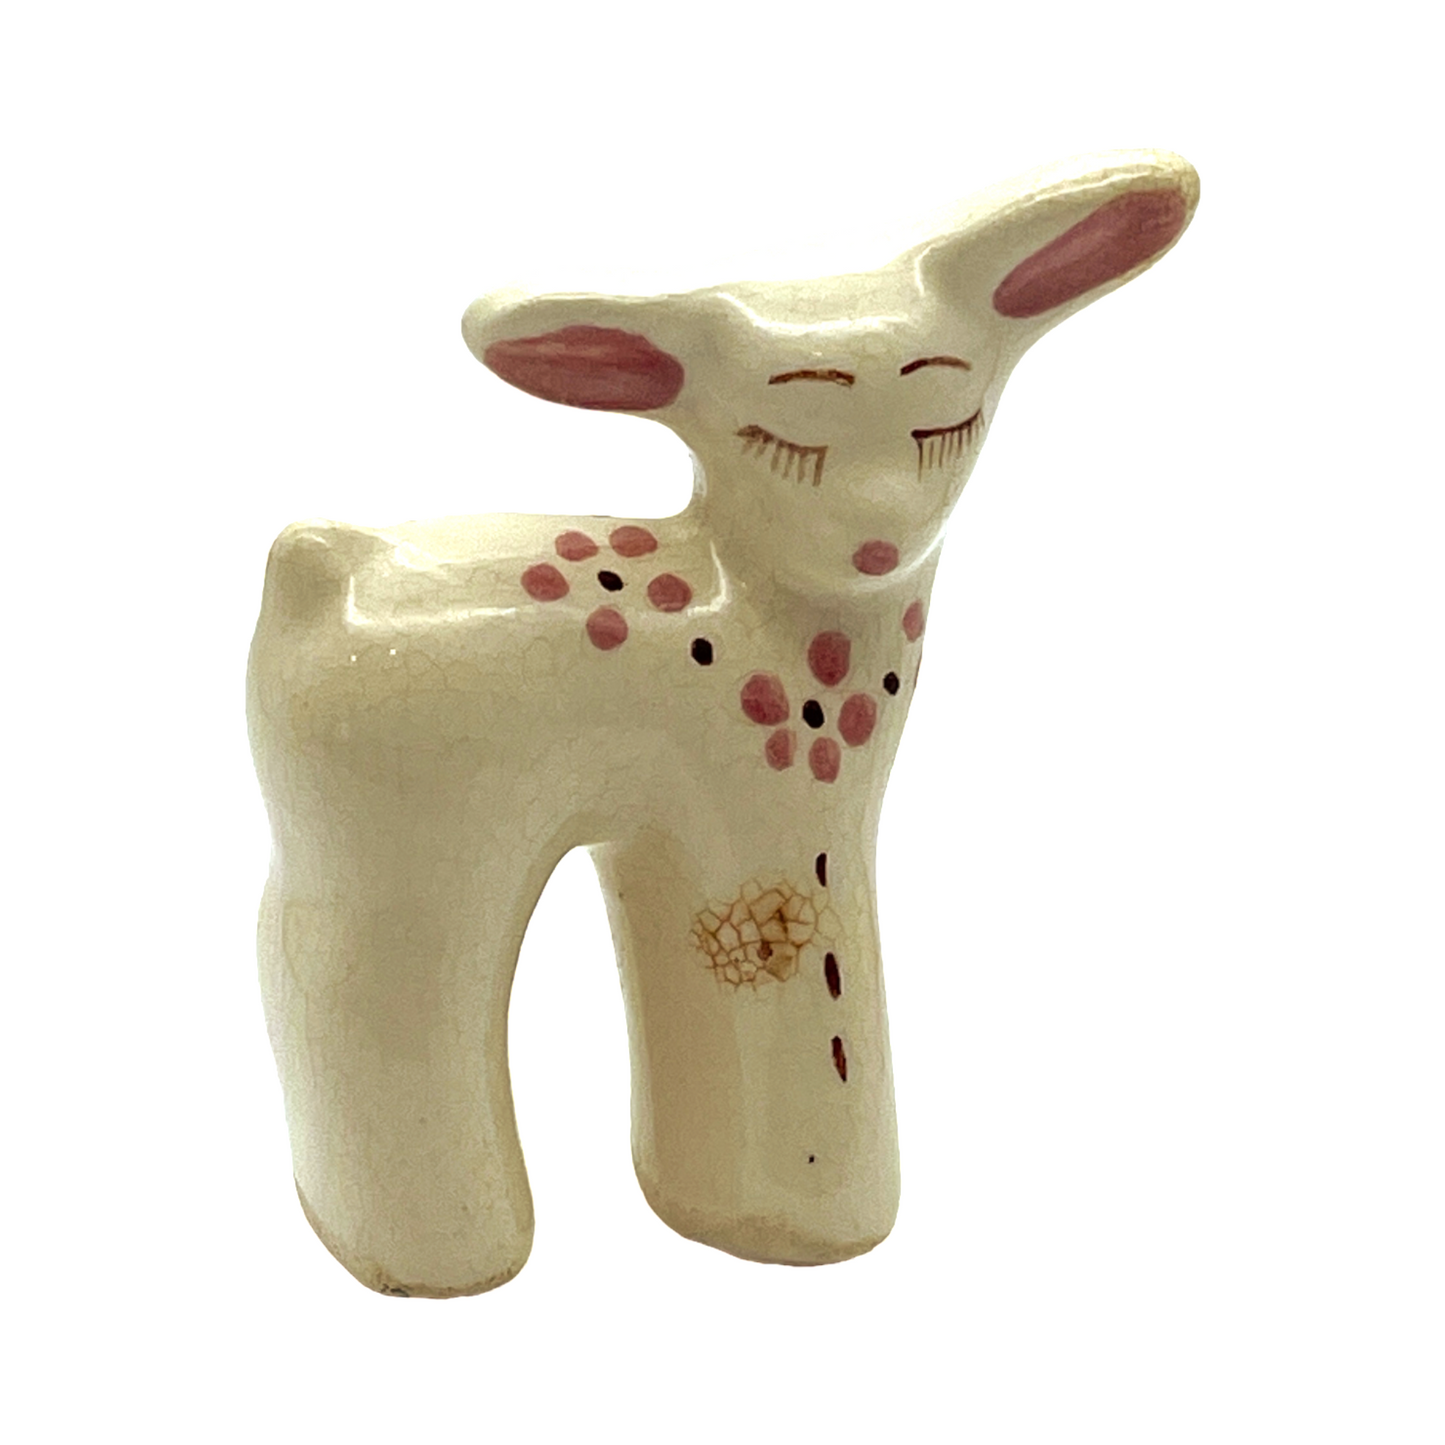 Delee Art - Deer "Spots On Neck" -  Hand Decorated - Vintage - 4"